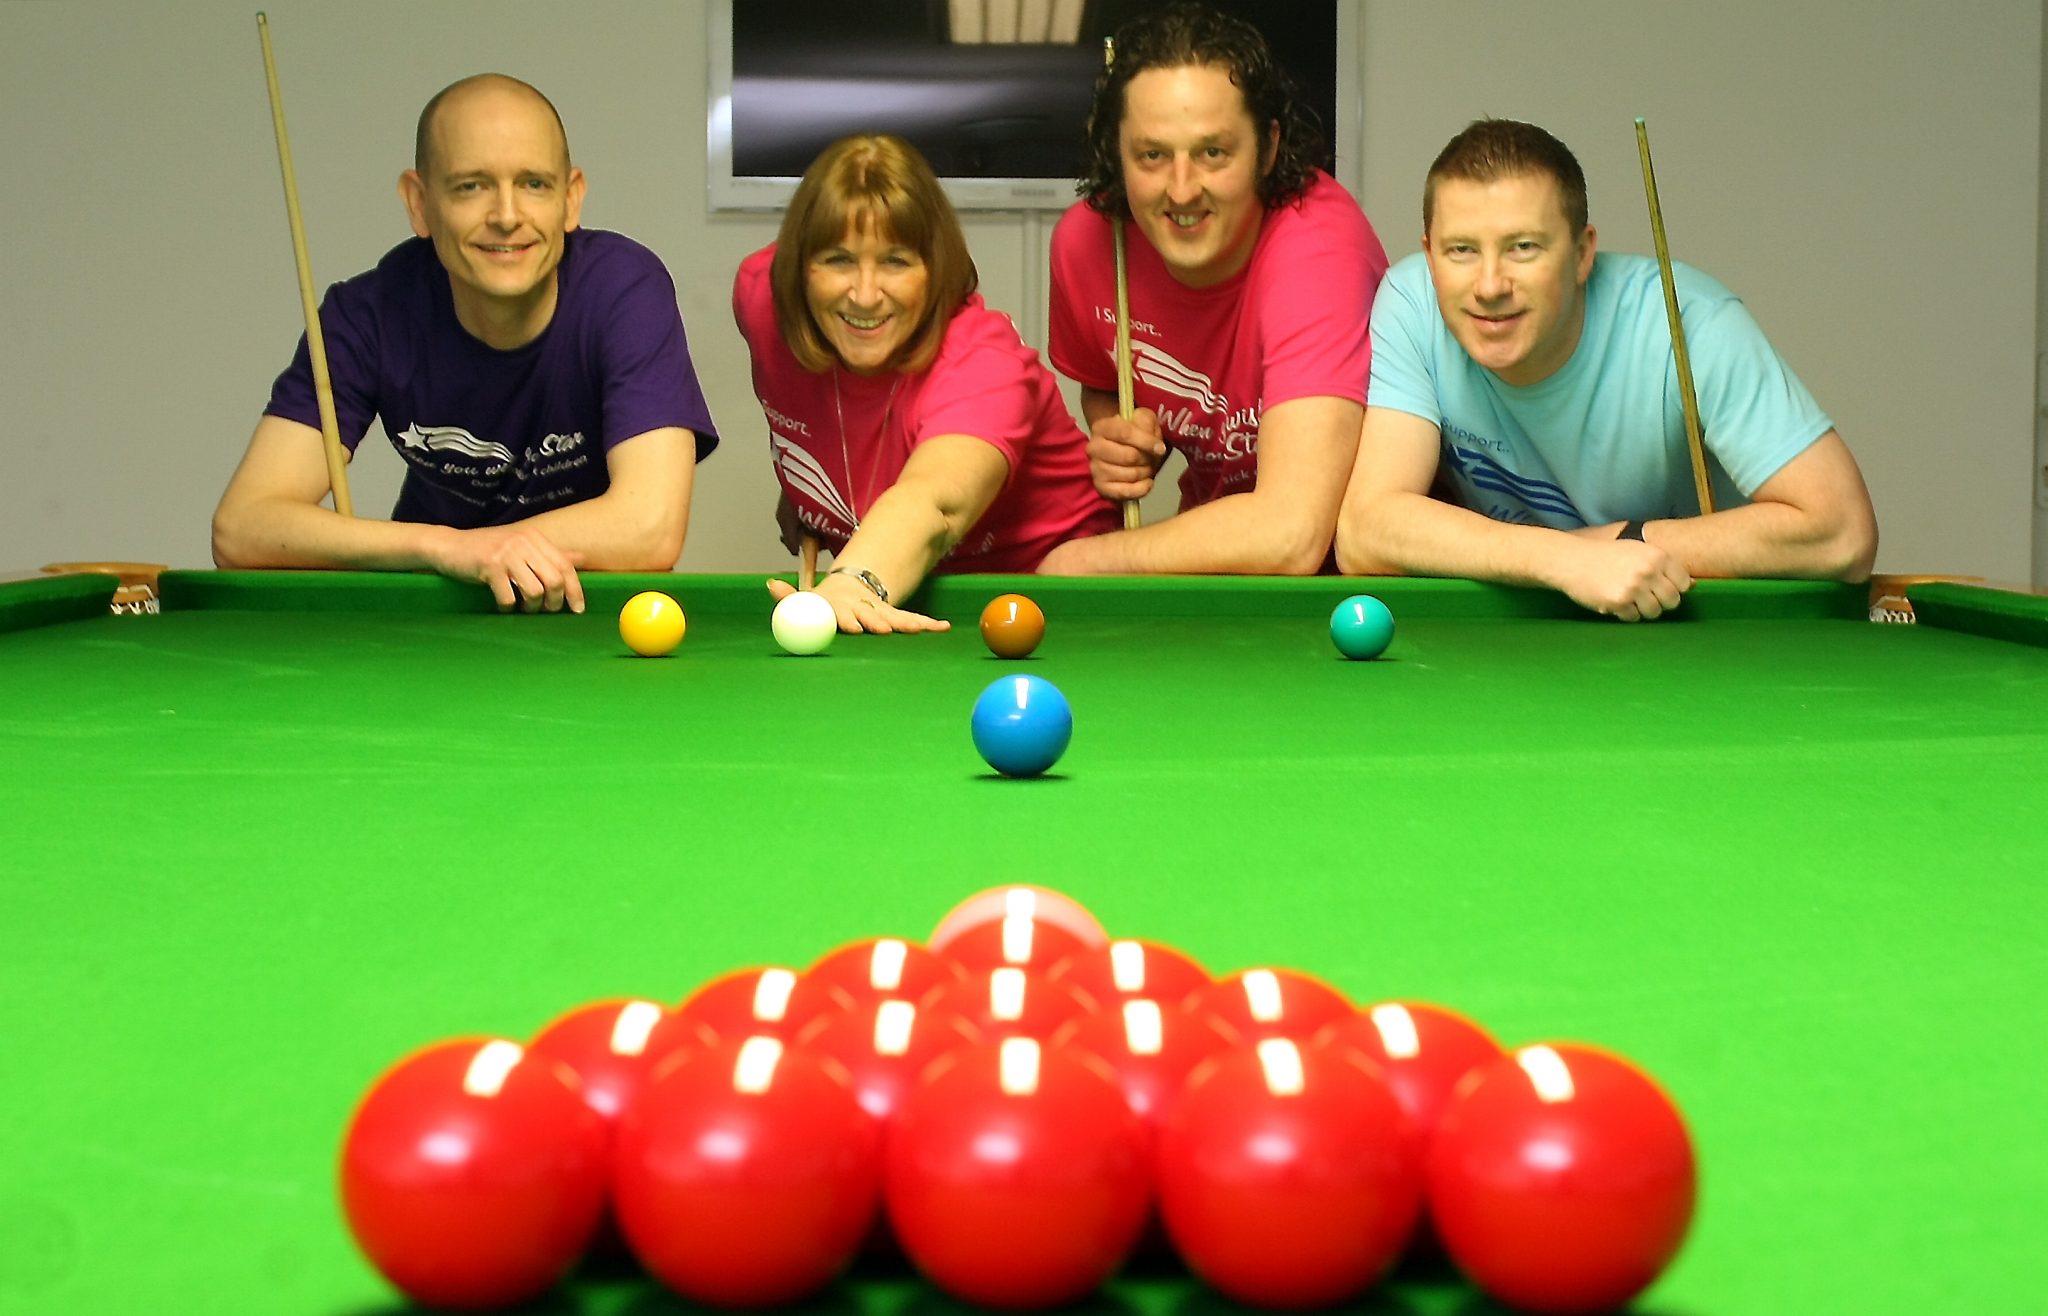 Nottingham Snooker on Tour with Jon & Steve